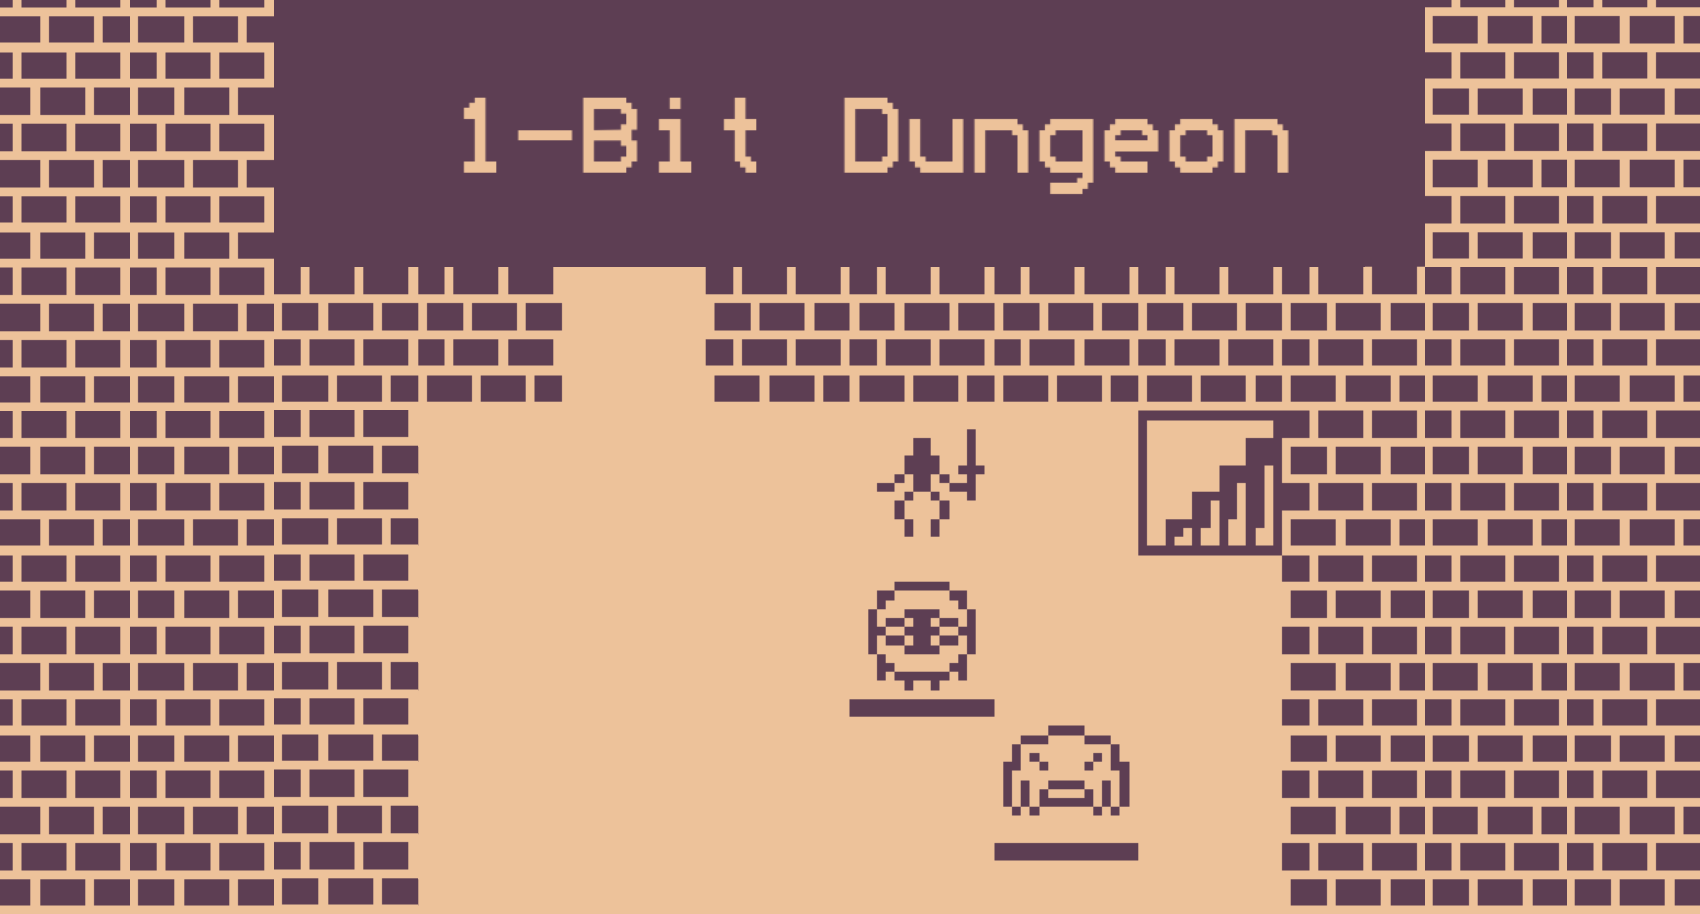 1-Bit Dungeon